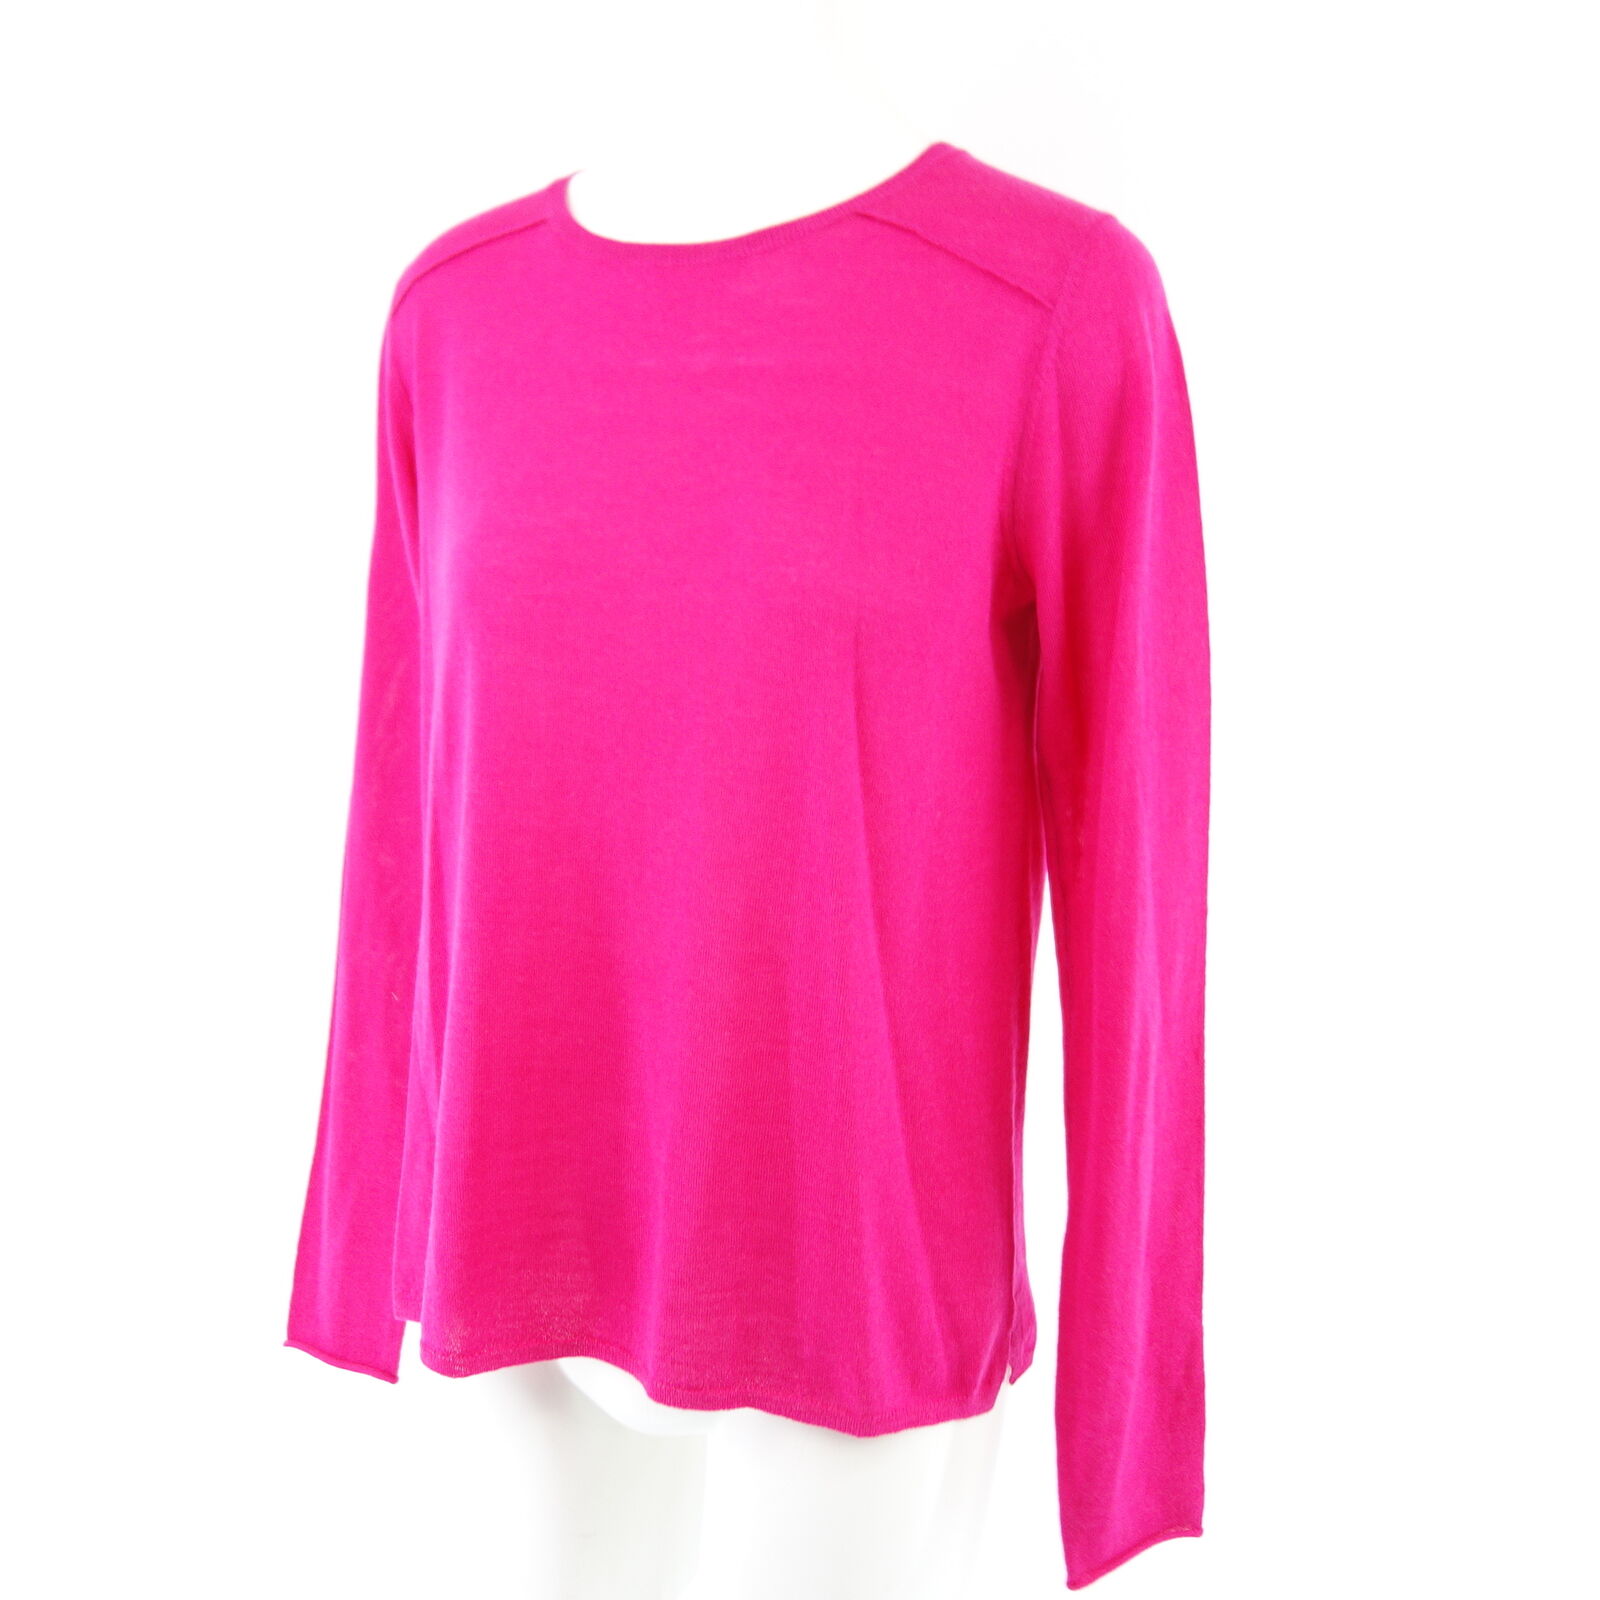 HMK Damen Pullover Modell Evie 36 Pink Reine Schurwolle Strick Wolle Np 179 Neu